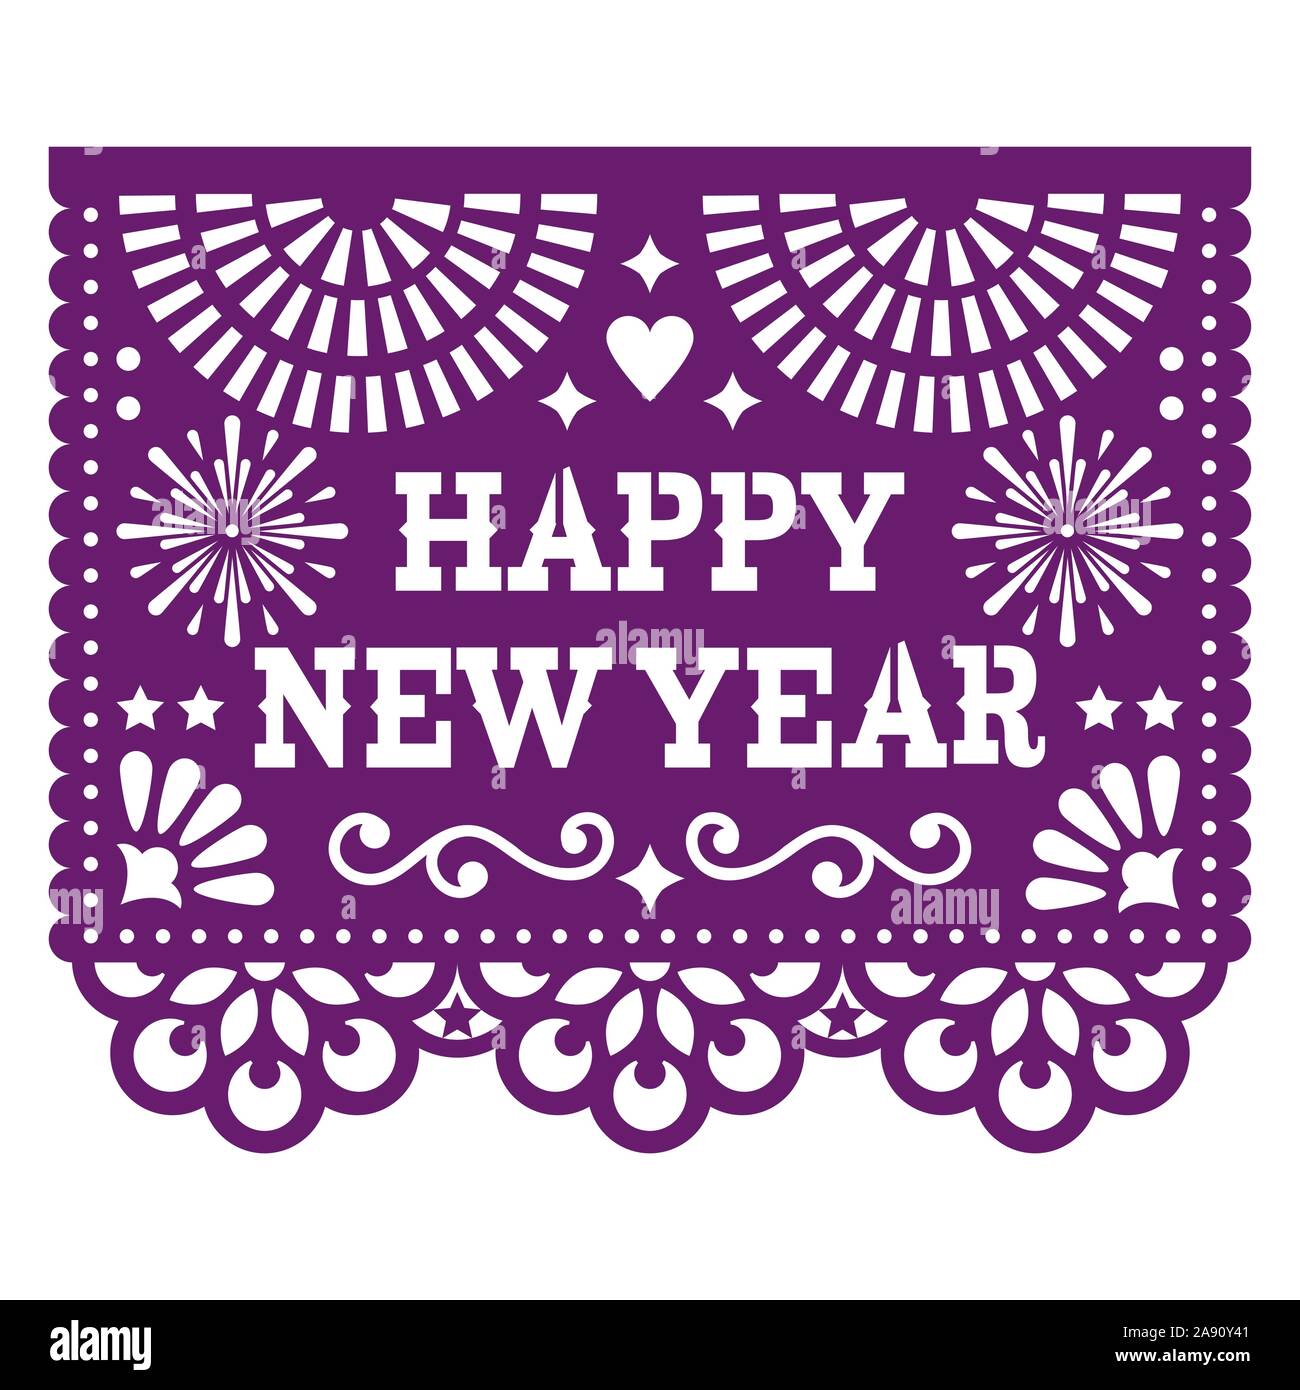 Frohes Neues Jahr Papel Picado vektor design mit, mexikanische Papier ausgeschnitten purple Grußkarte auf Weiß Stock Vektor